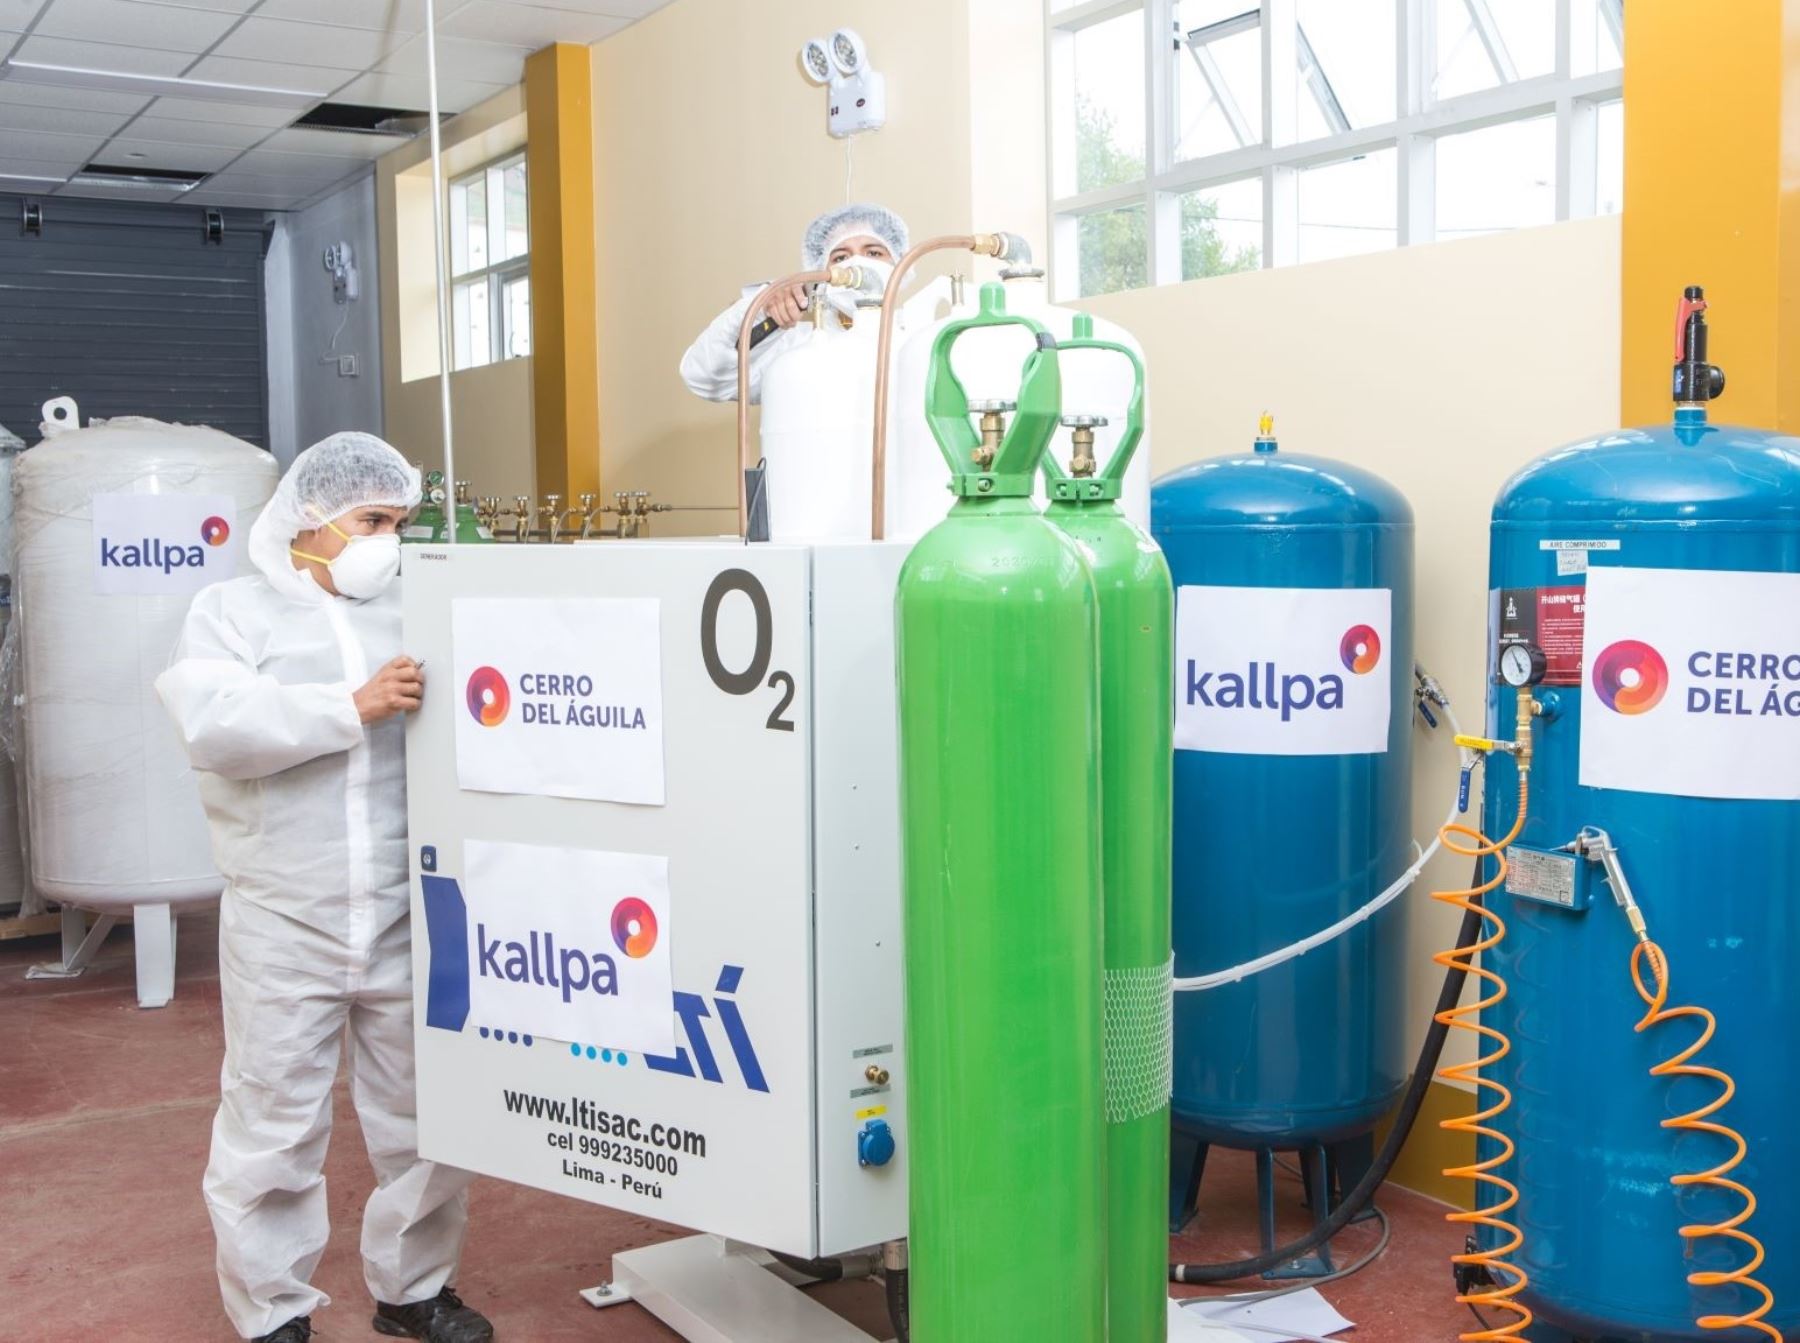 Empresa Kallpa donó al Gobierno Regional de Huancavelica una planta de oxígeno medicinal que se instaló en el Hospital de Pampas para la atención de pacientes covid-19 de la provincia de Tayacaja. ANDINA/Difusión